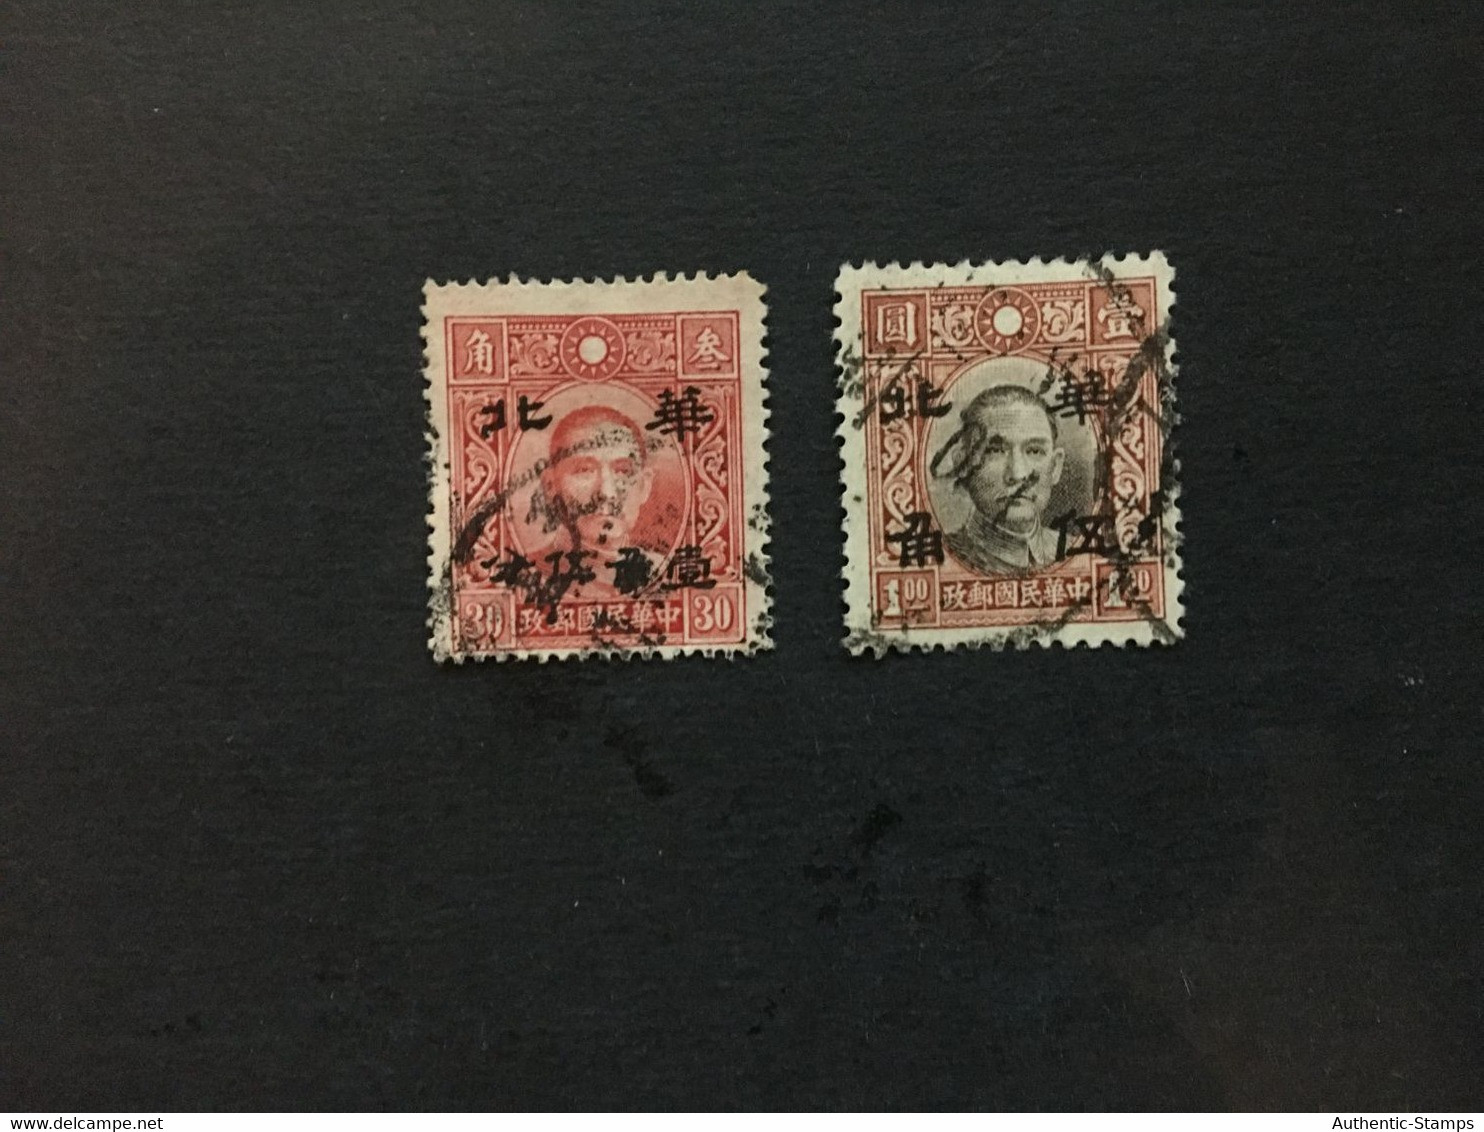 China Stamp, Used, CINA,CHINE,LIST1667 - 1941-45 Northern China